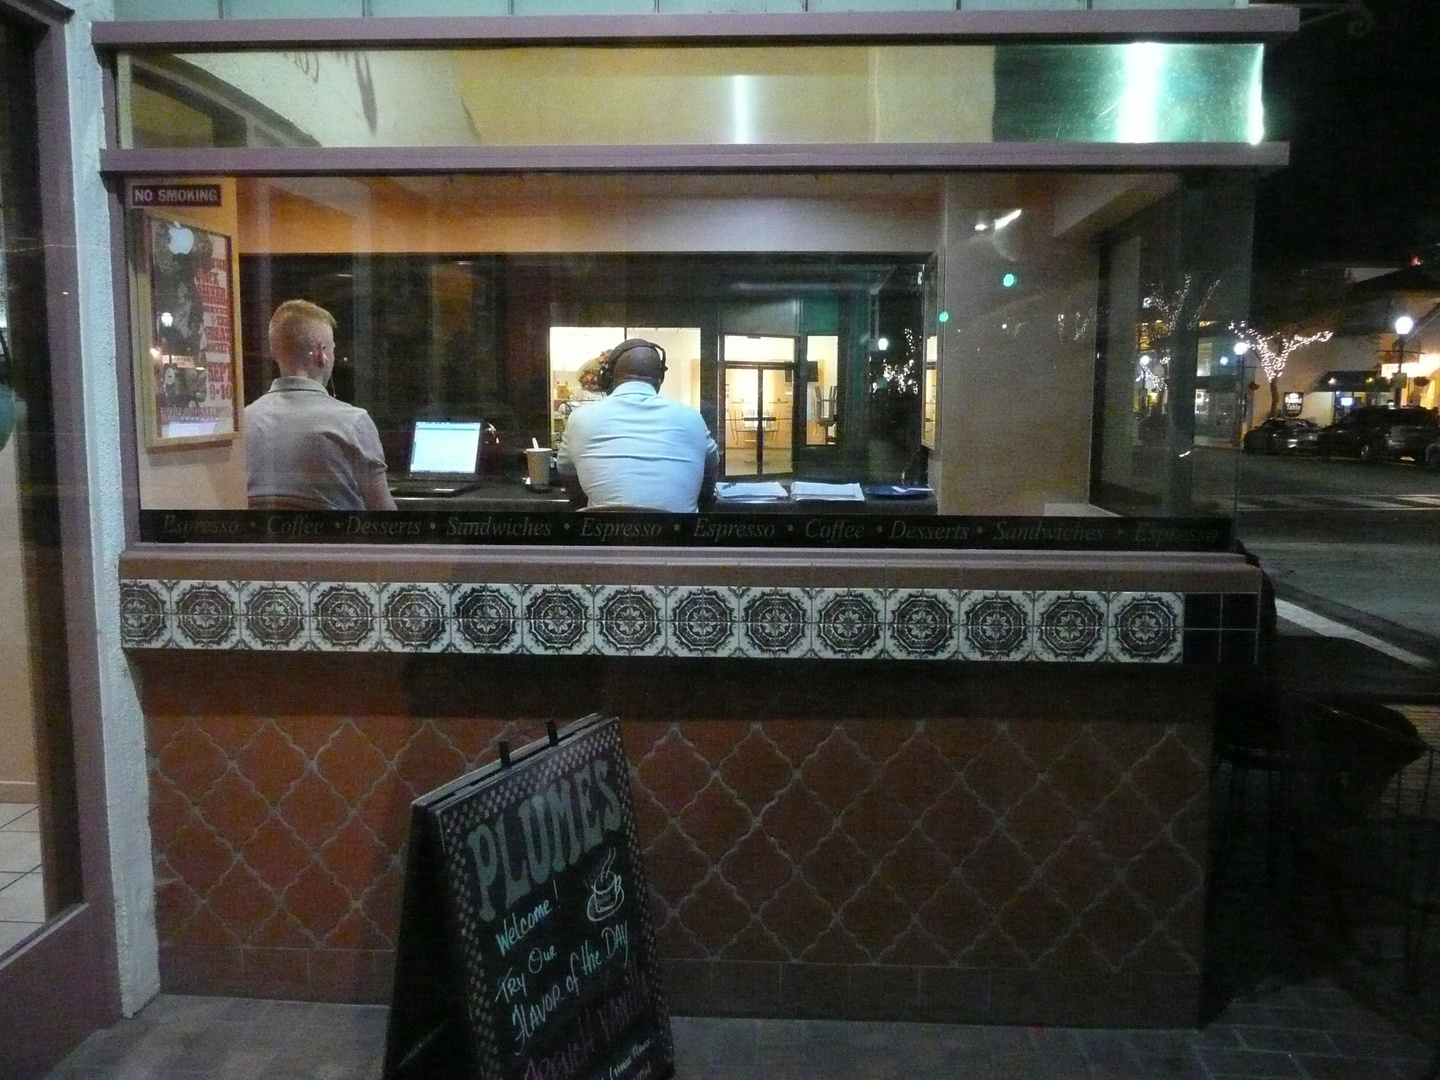 Menschen im Café in Monterey - erinnert mich an Edward Hopper